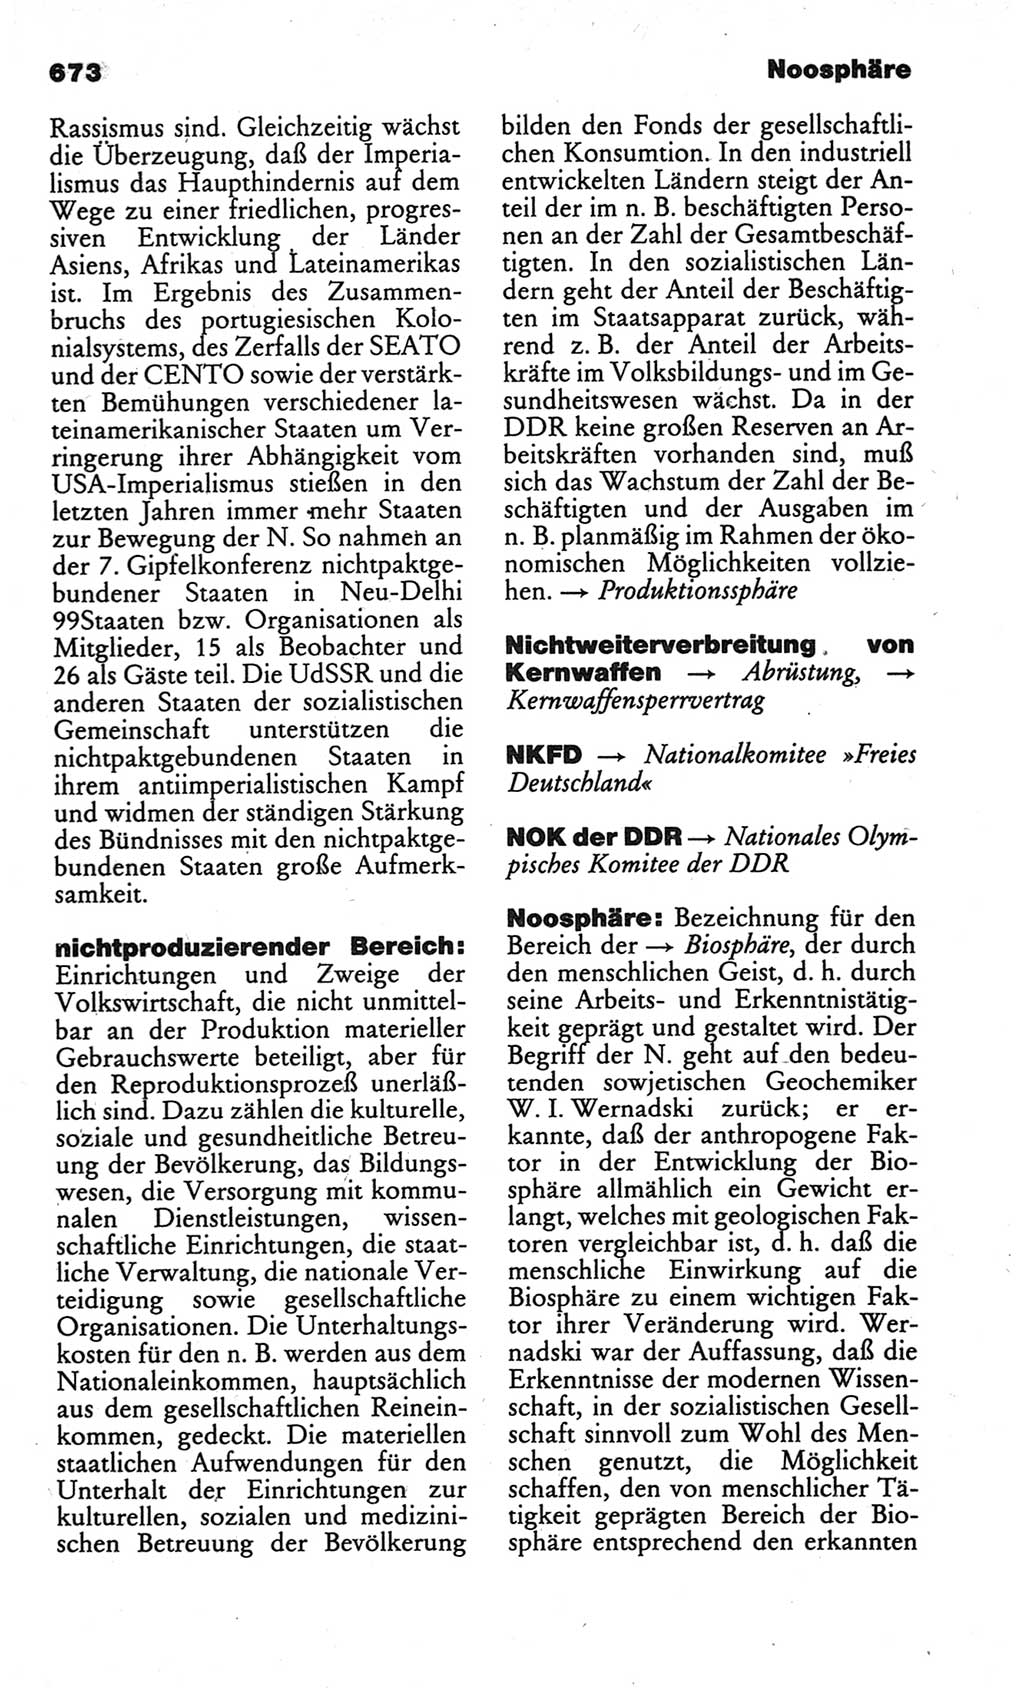 Kleines politisches Wörterbuch [Deutsche Demokratische Republik (DDR)] 1986, Seite 673 (Kl. pol. Wb. DDR 1986, S. 673)